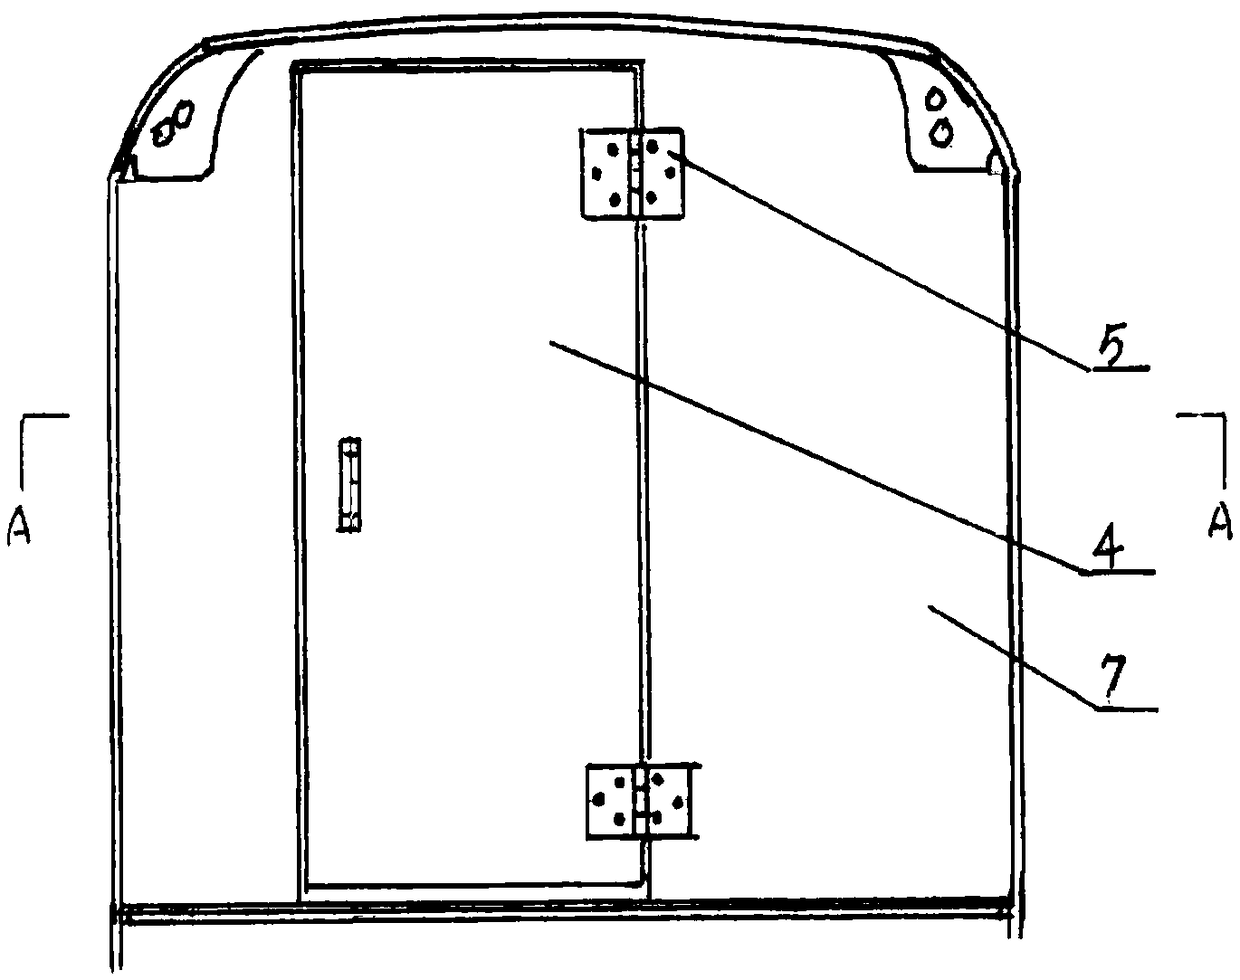 Concave-convex type anti-radiation access door